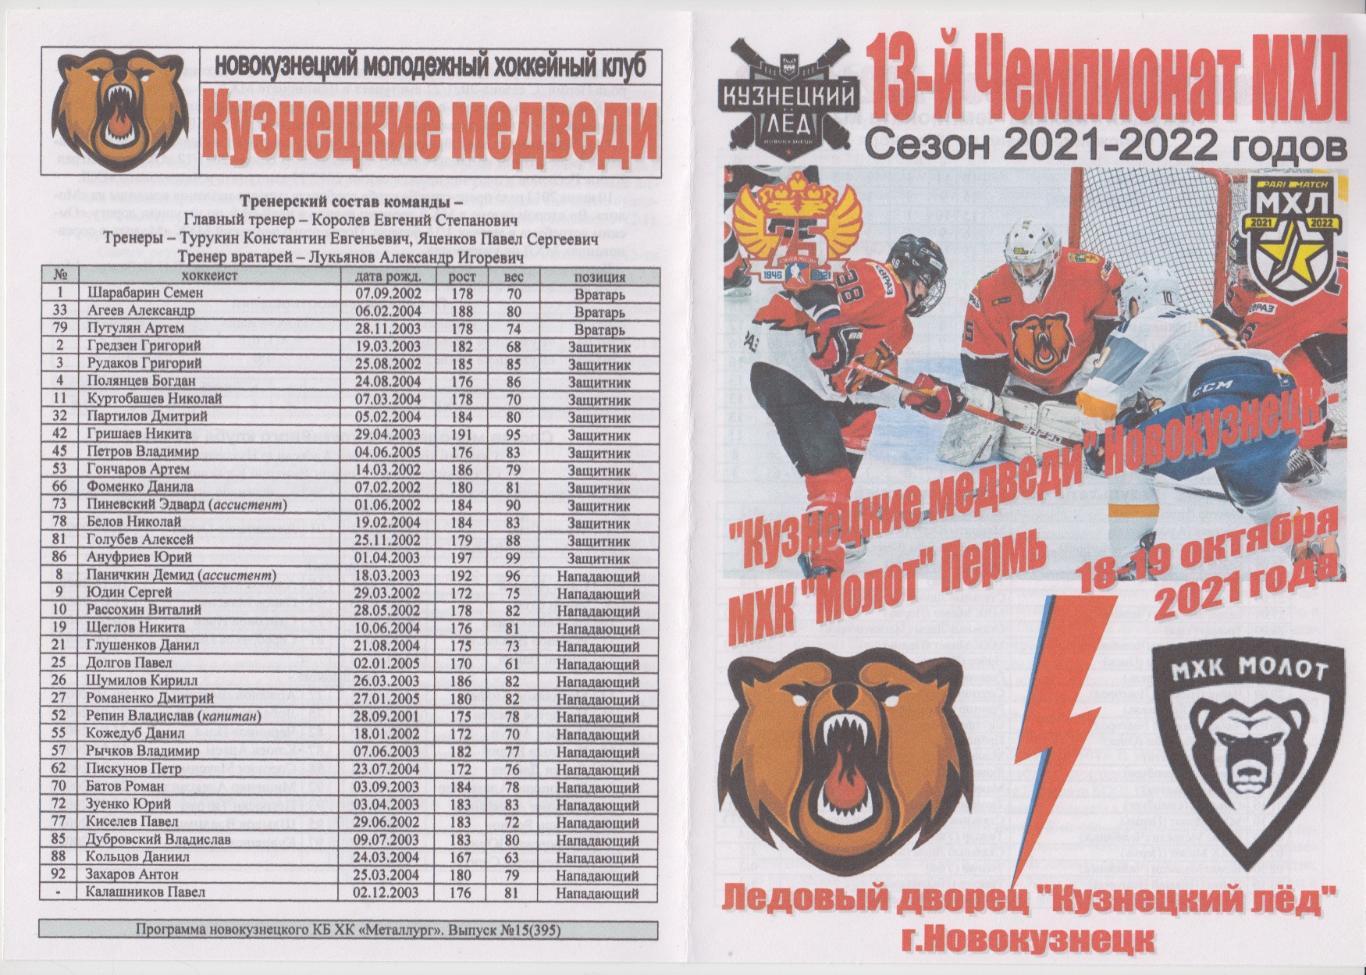 Кузнецкие медведи(Новокузнецк) - МХК Молот(Пермь) - 2021/22 - 1